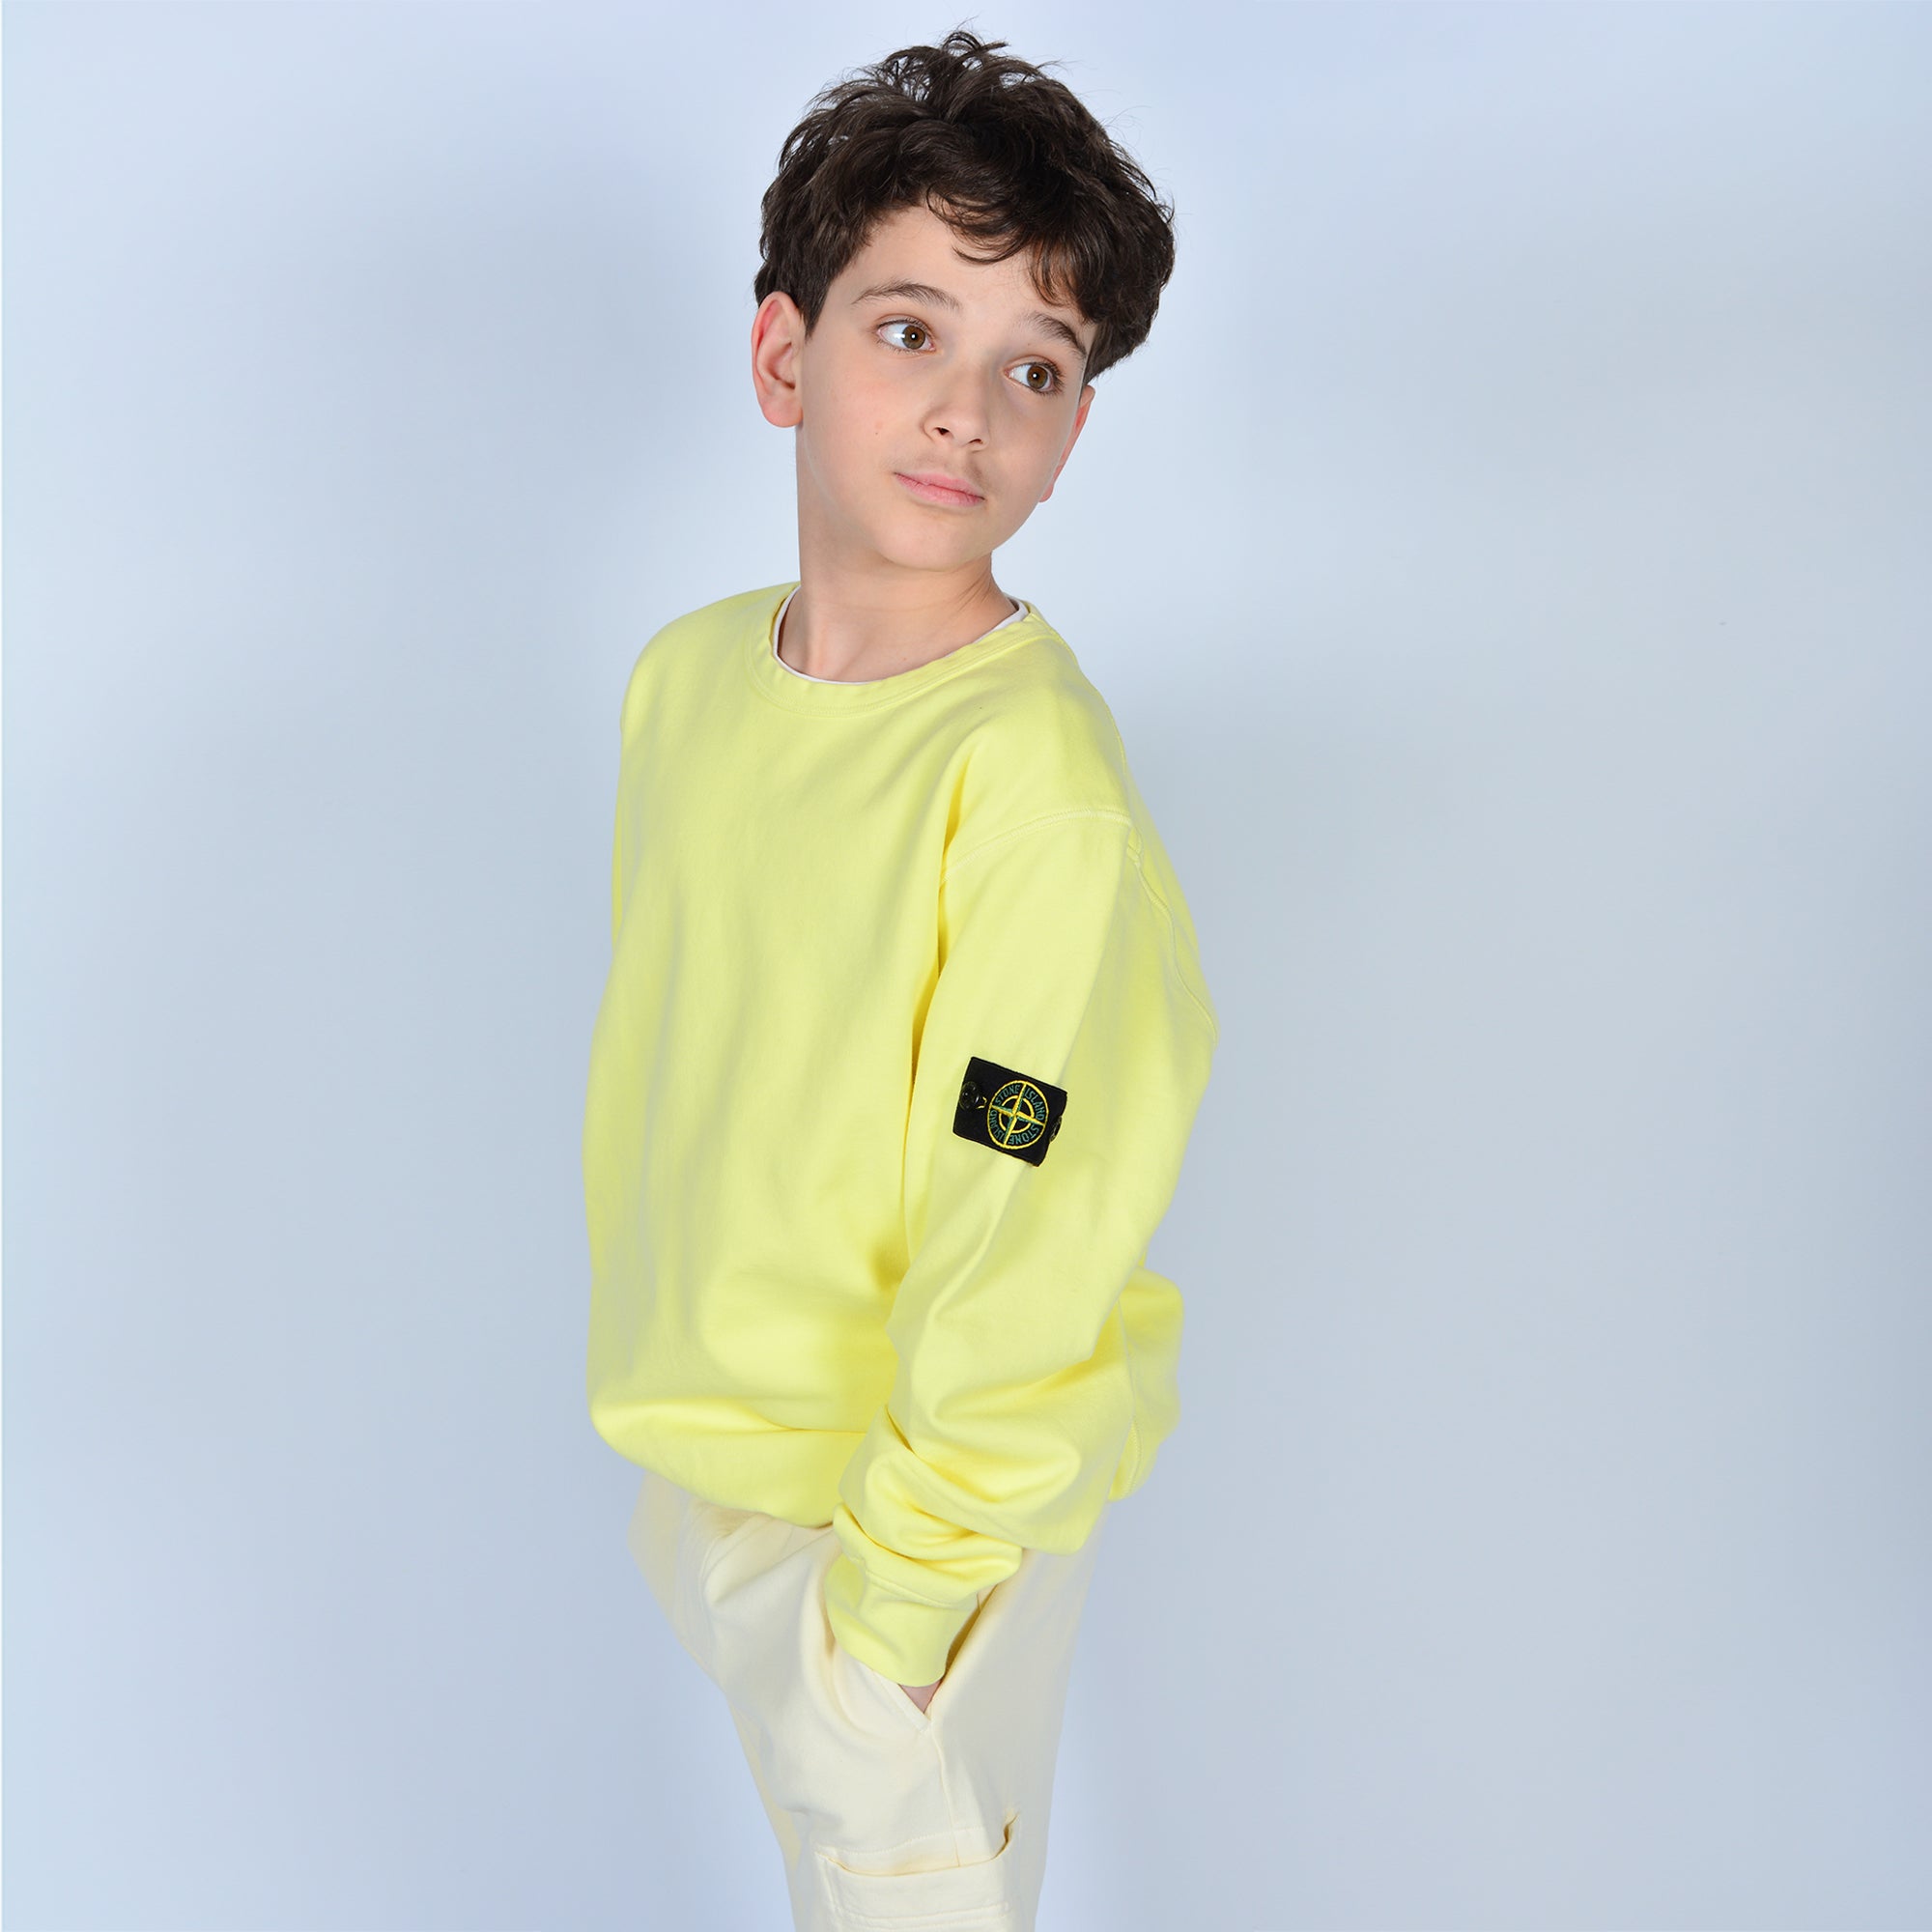 Stone Island Yellow Sweatshirt